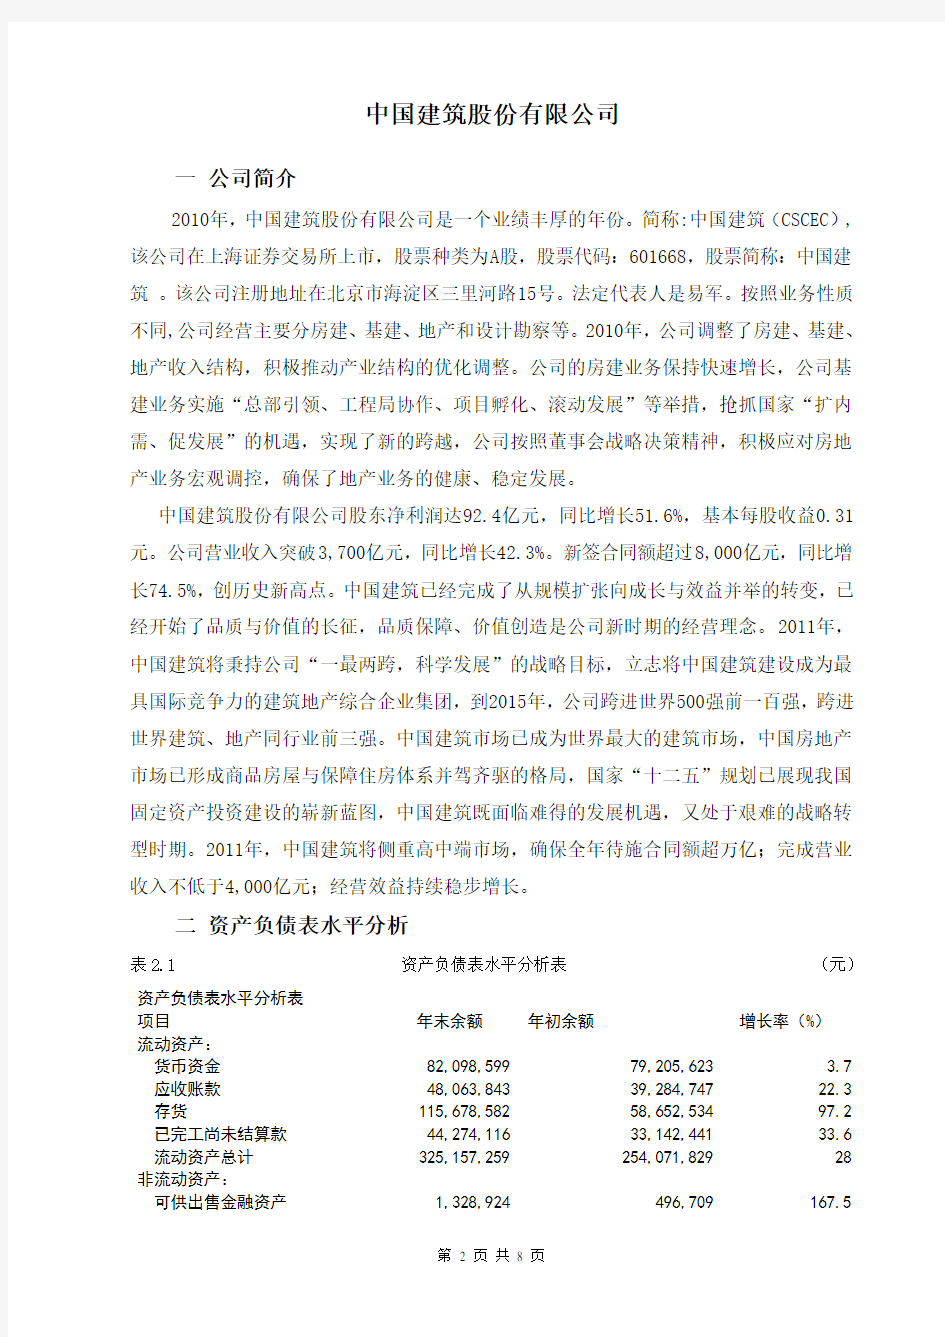 中国建筑股份有限公司(2)